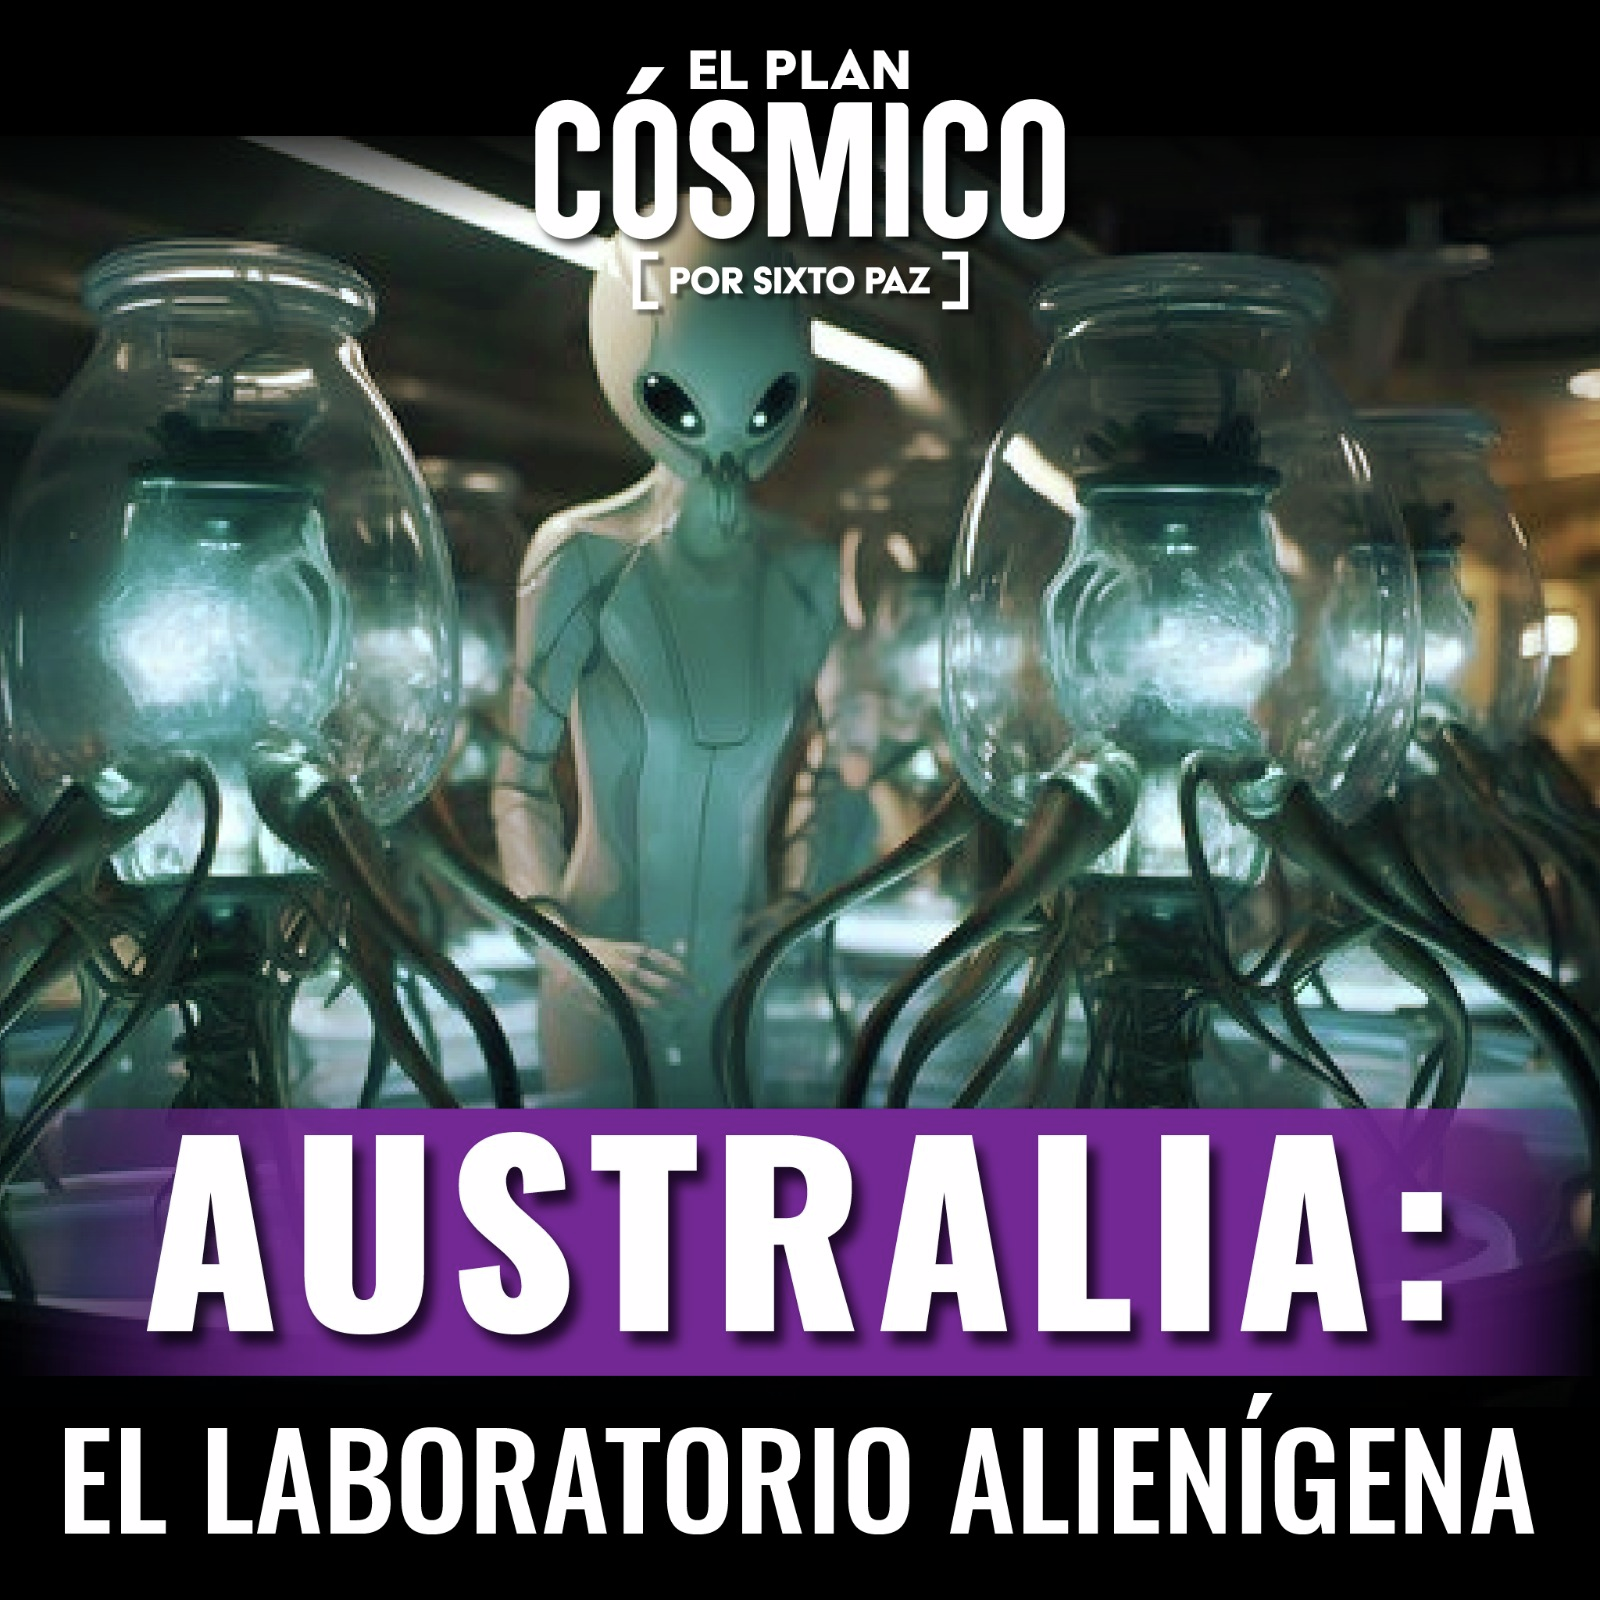 El laboratorio alienígena